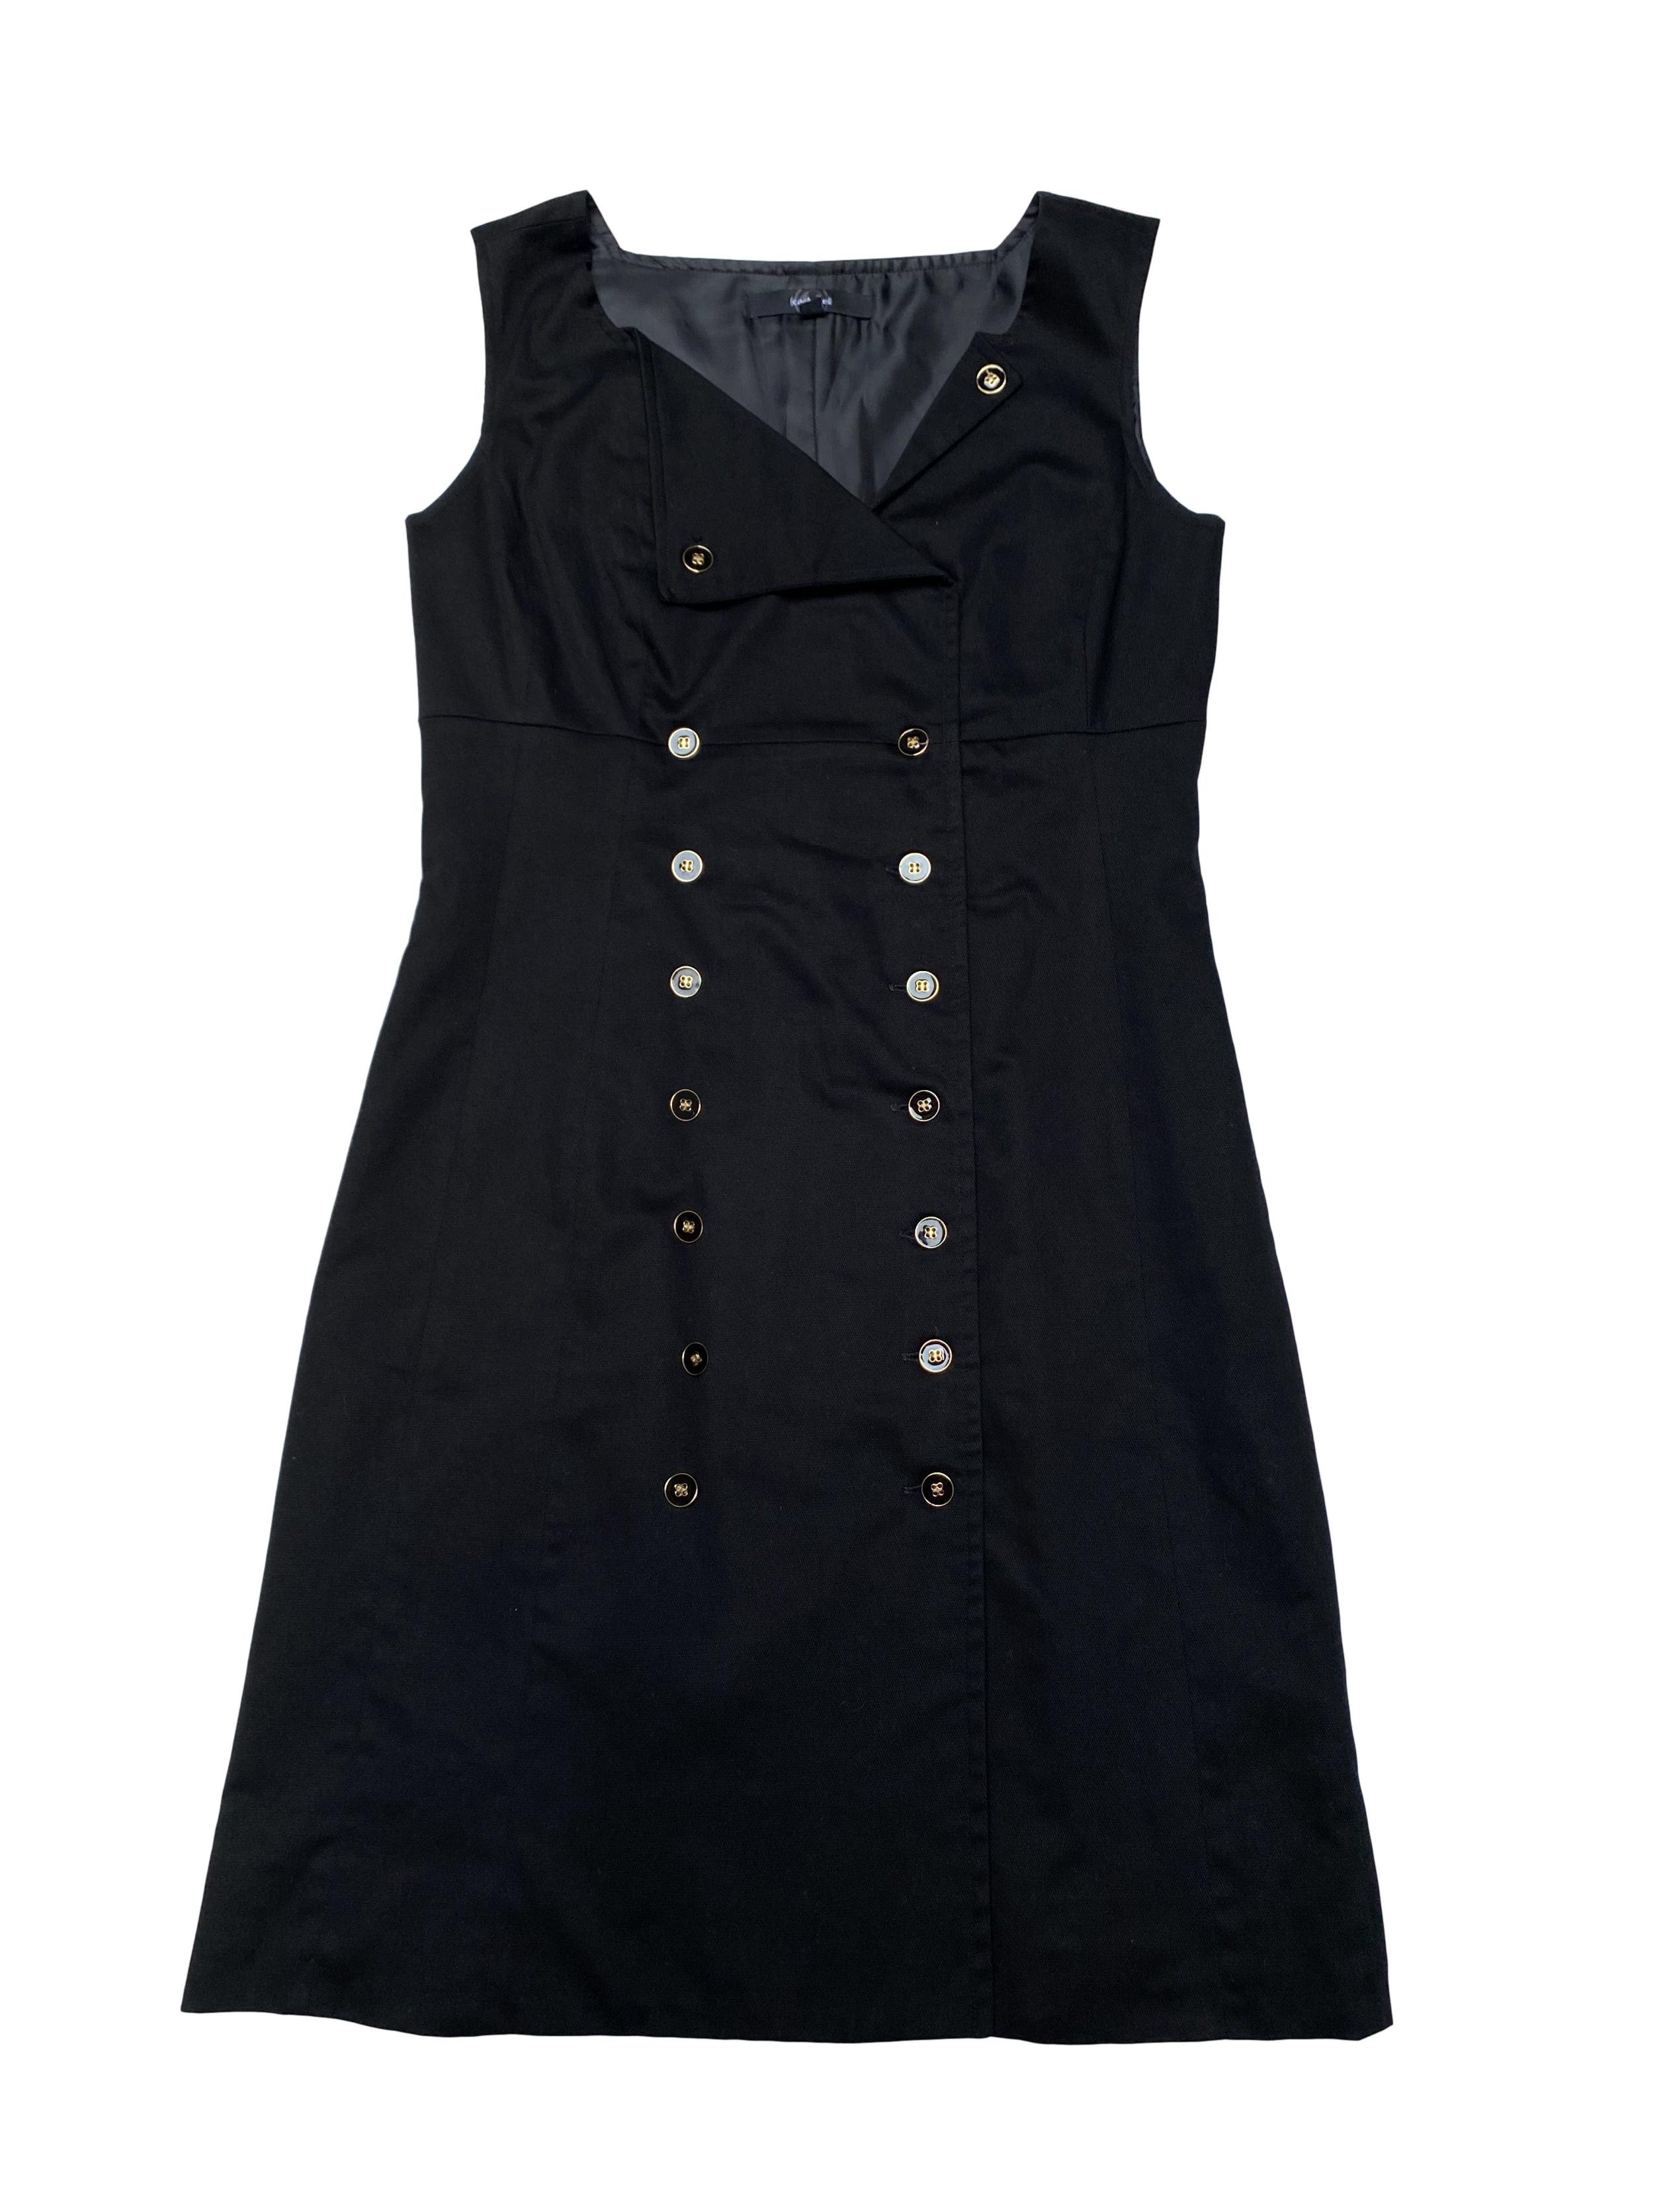 Vestido Cacharel negro tipo drill 98% algodón,  forrado, cruzado con doble fila de botones. Largo 90cm. Precio original S/ 190